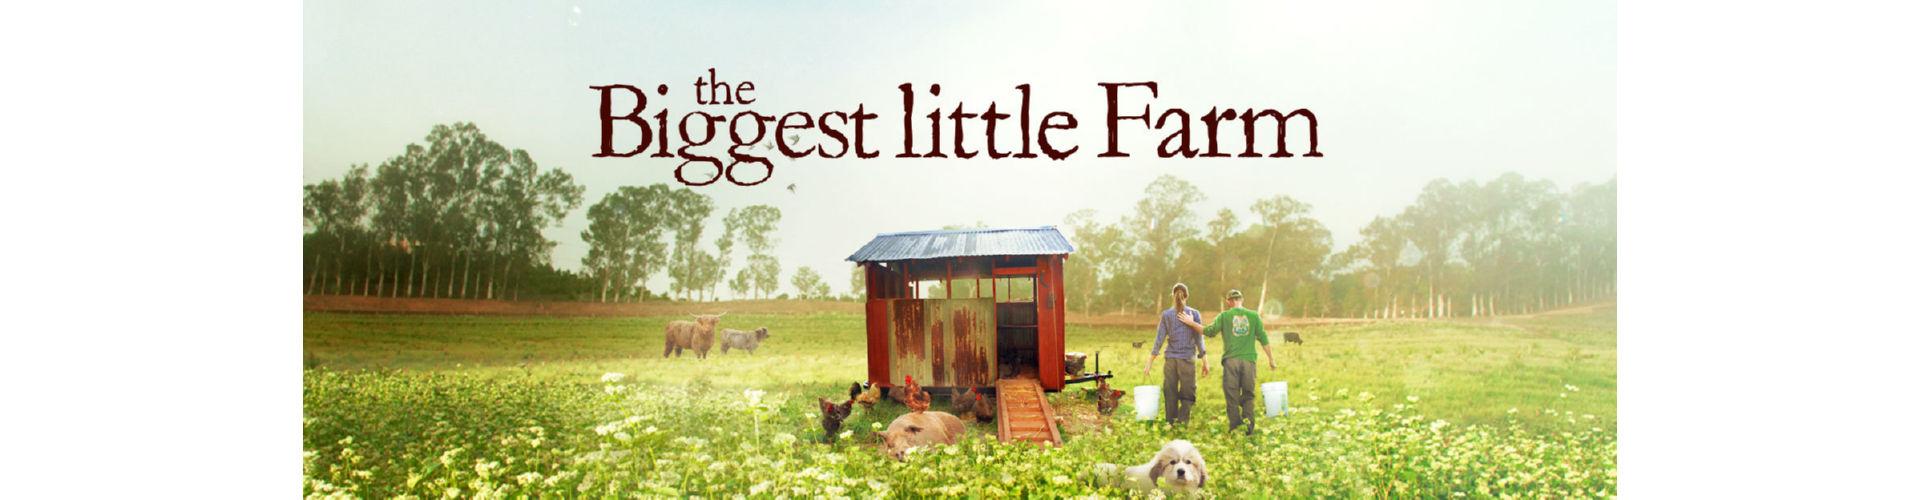 החווה הקטנה הגדולה ביותר - סרט | the Biggest Little Farm